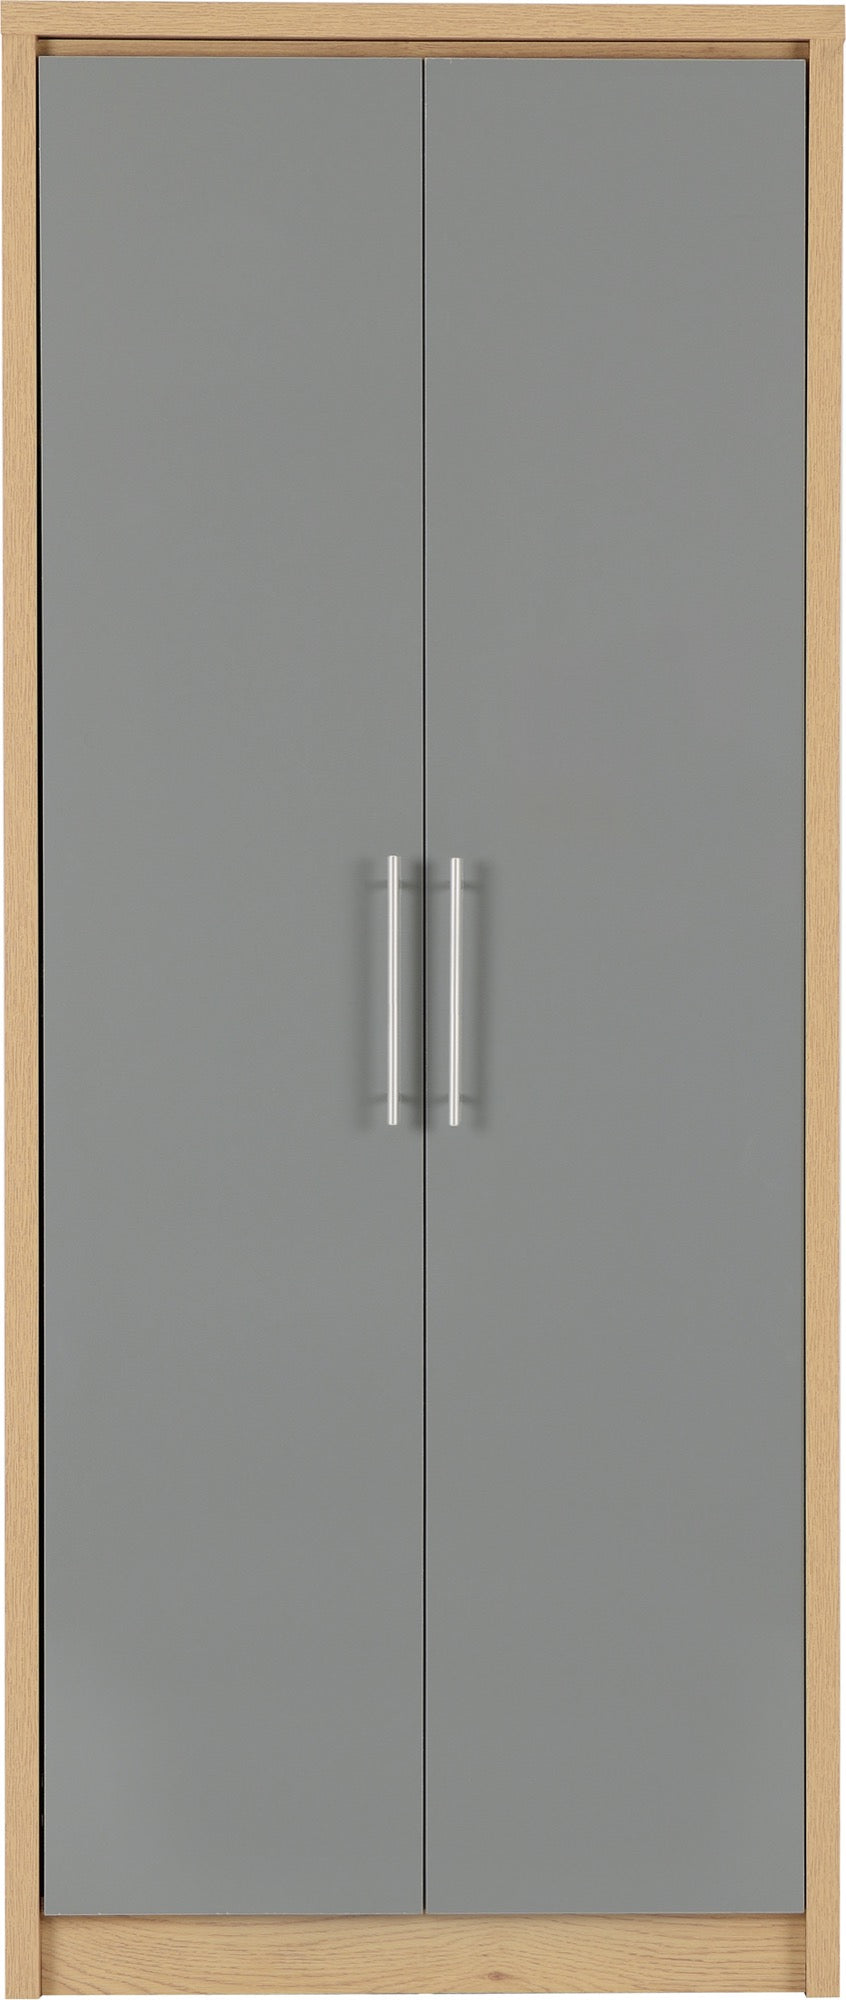 2 door wardrobe grey